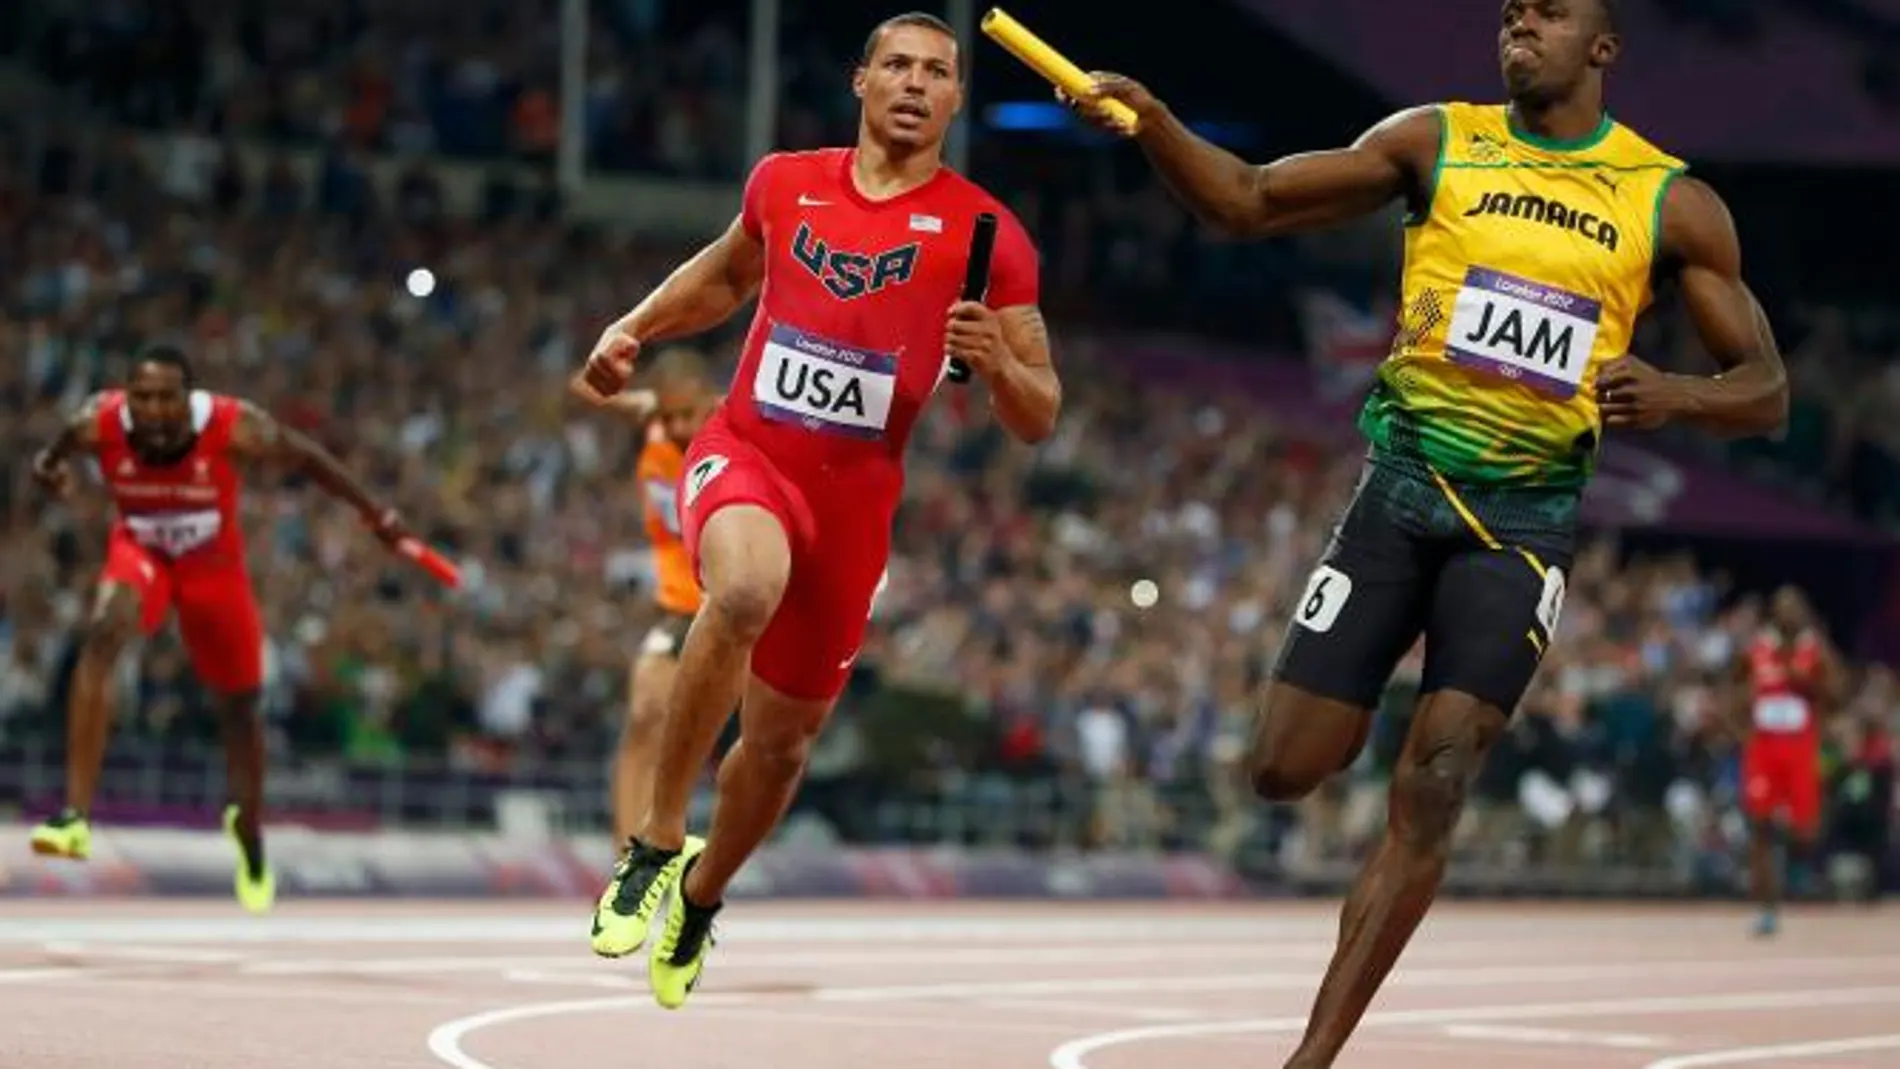 Atletismo/ Jamaica se impone en los 4x100 con récord del mundo MADRID, 11 (EUROPA PRESS)